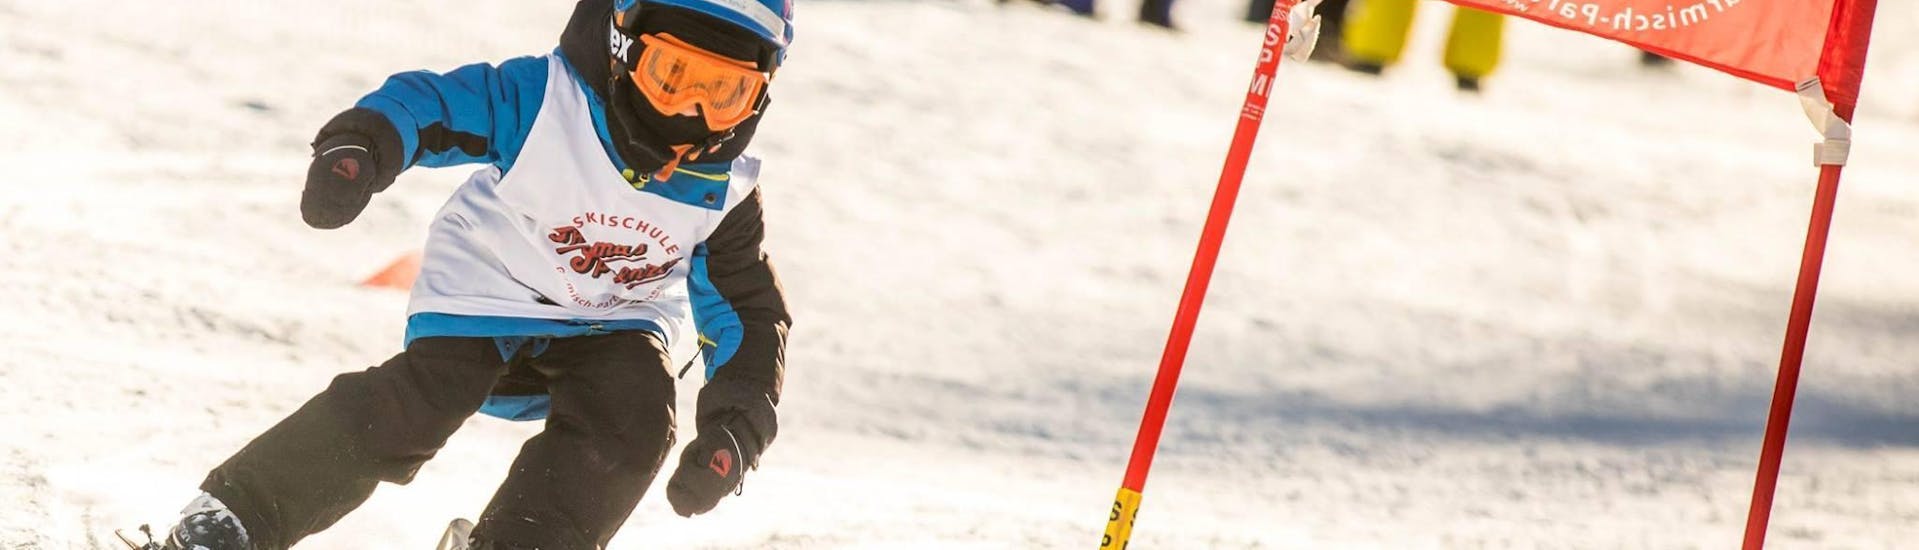 Un jeune enfant descend un parcours de course dans le cadre des cours de ski pour enfants (4-12 ans) - tous niveaux de l'école de ski Skischule Thomas Sprenzel dans la station de ski de Garmisch-Classic.